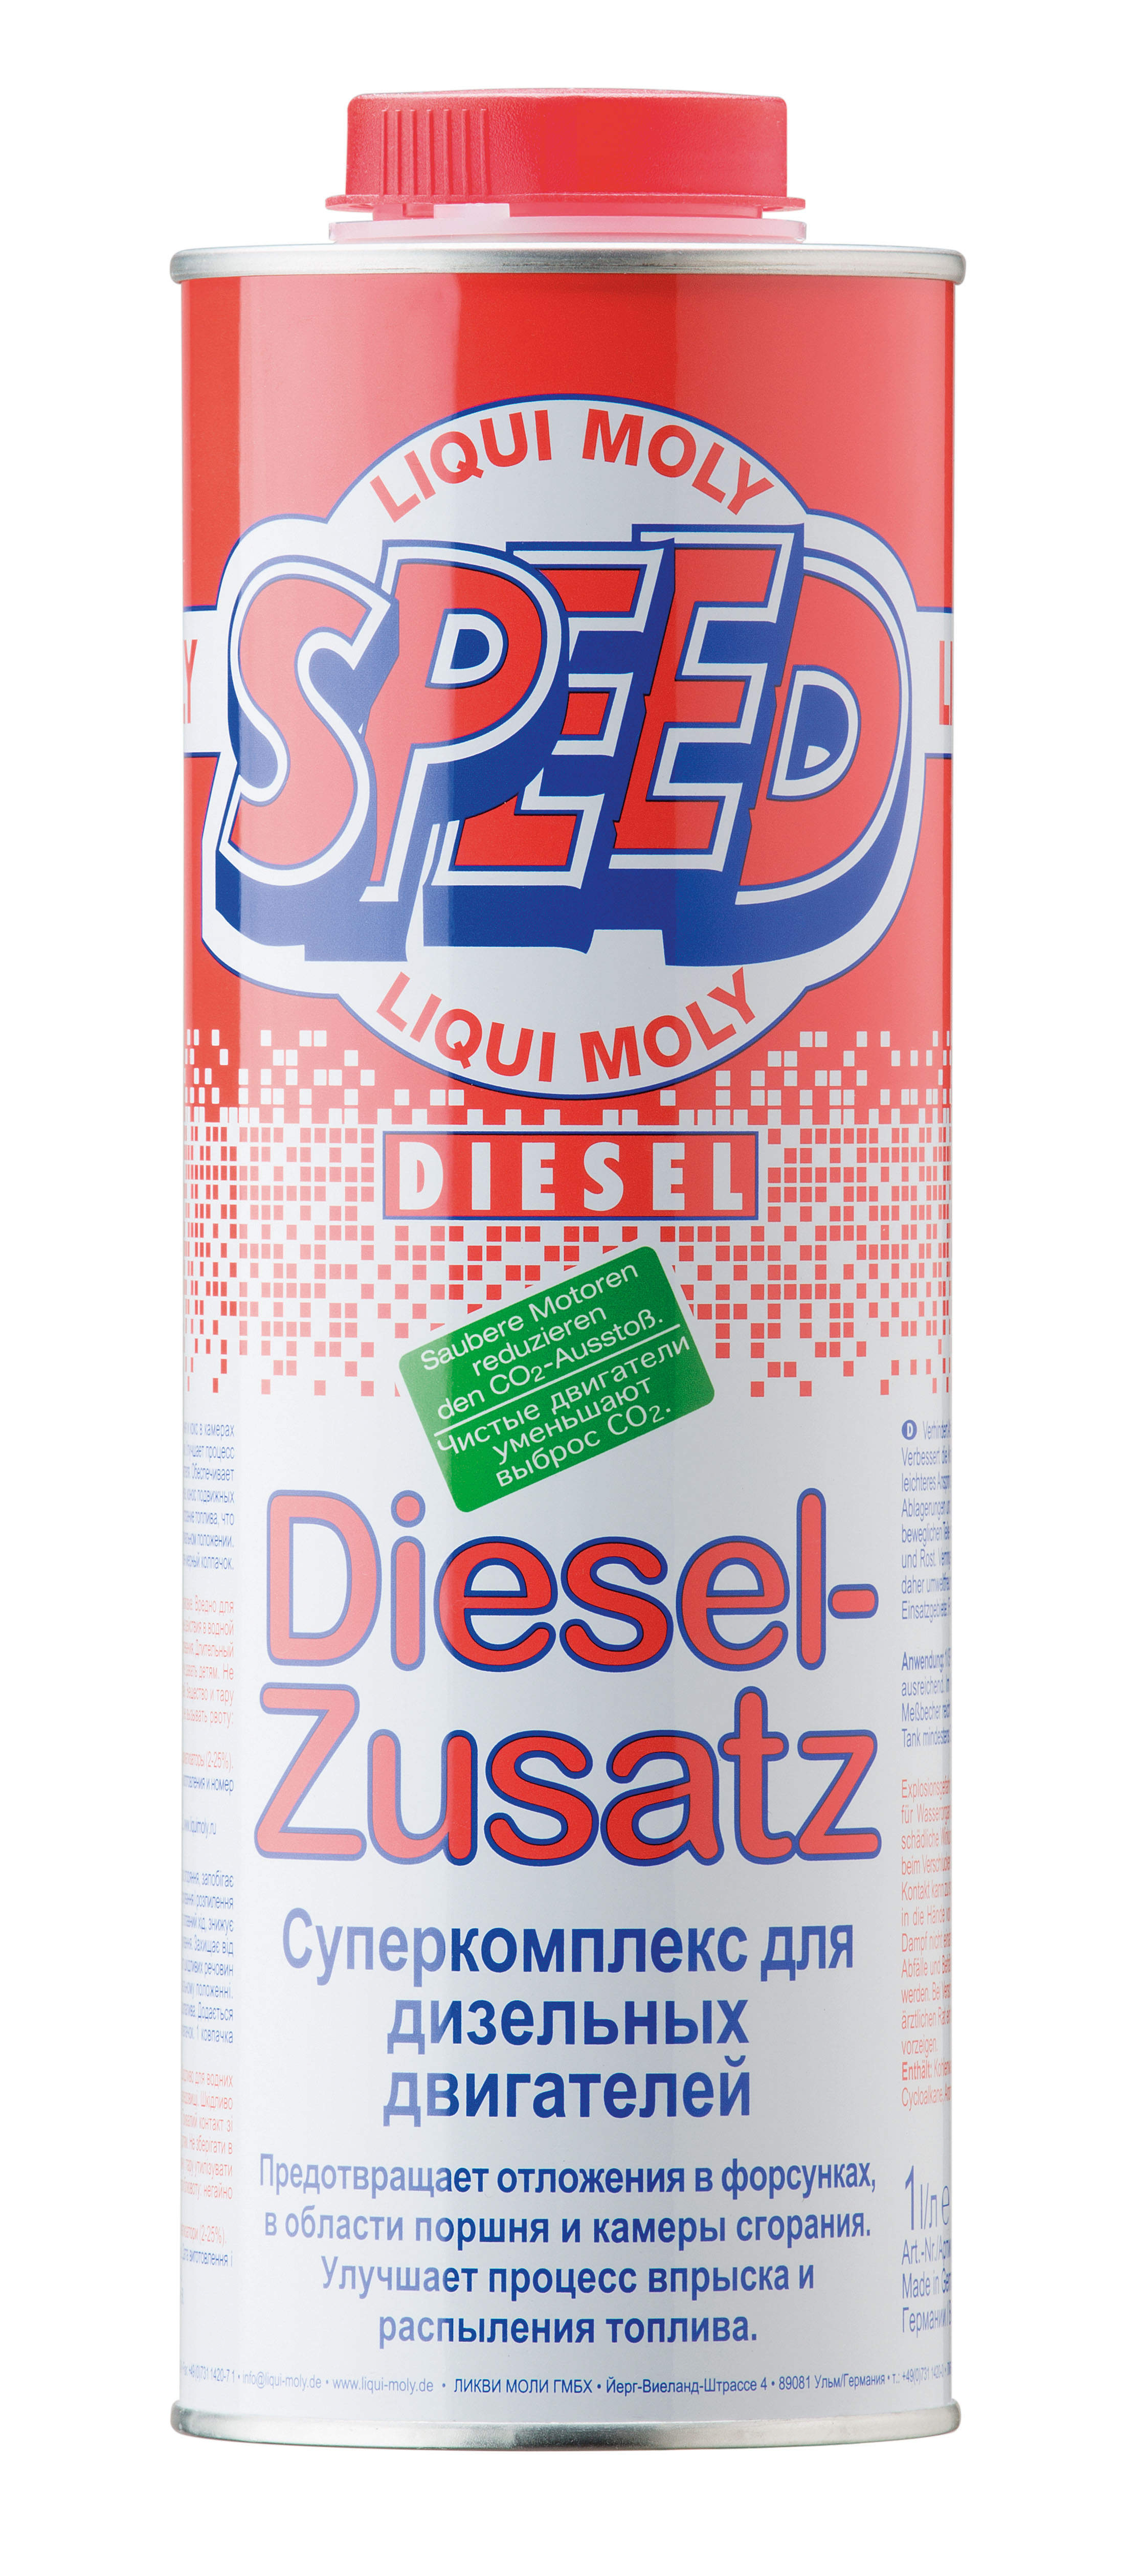 1975 LiquiMoly Суперкомплекс для диз.двиг.  Speed Diesel Zusatz (1л) 1975*